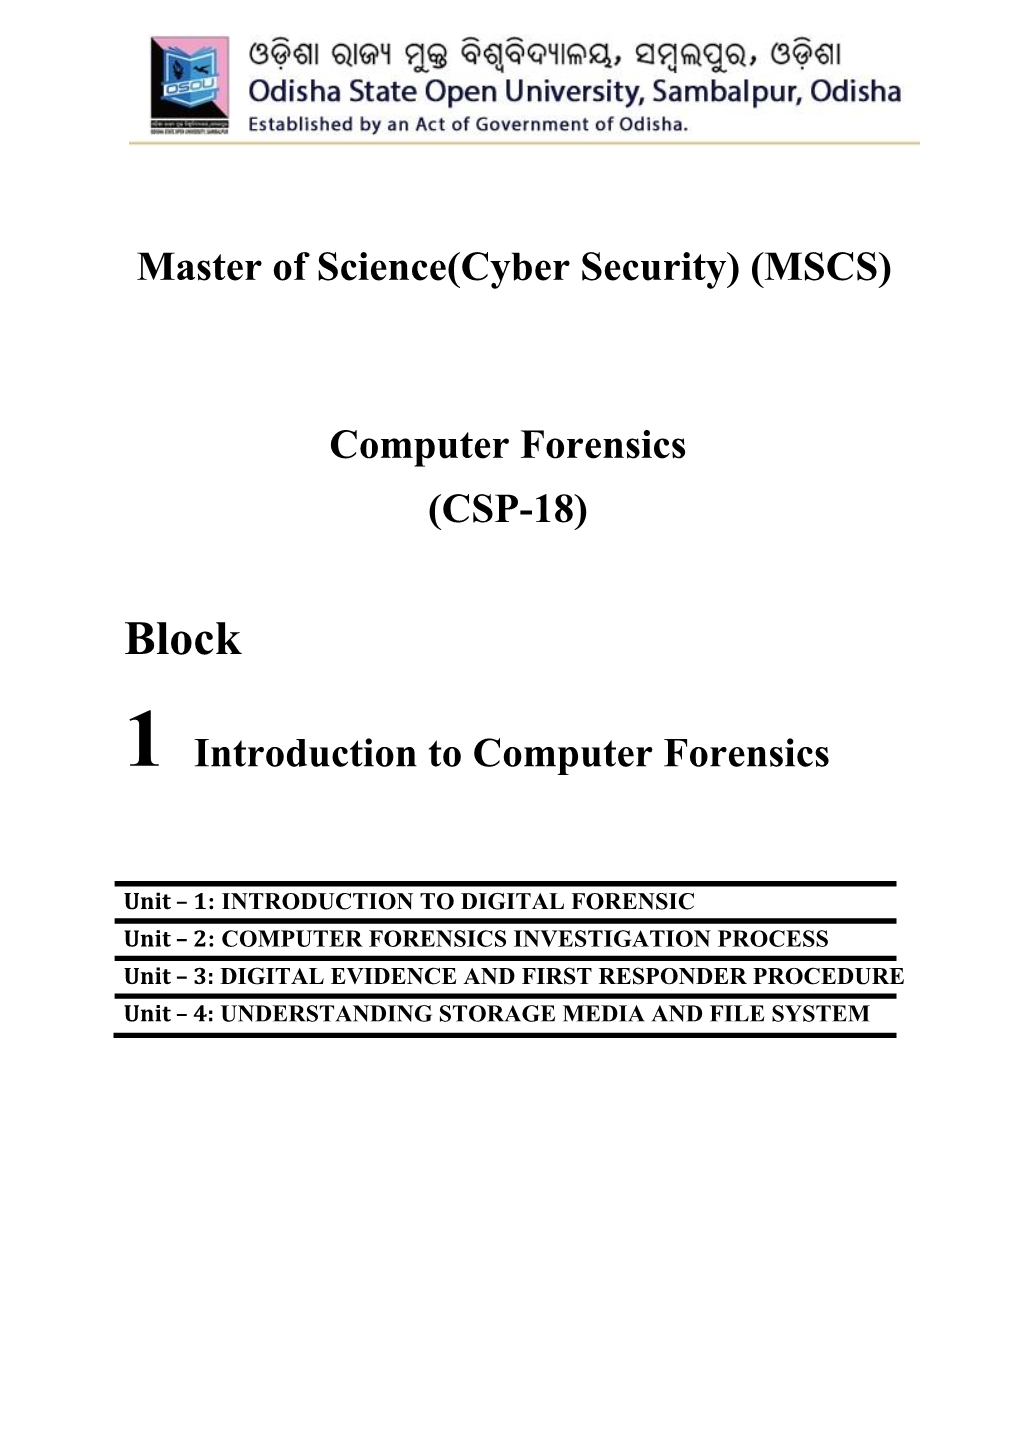 (MSCS) Computer Forensics